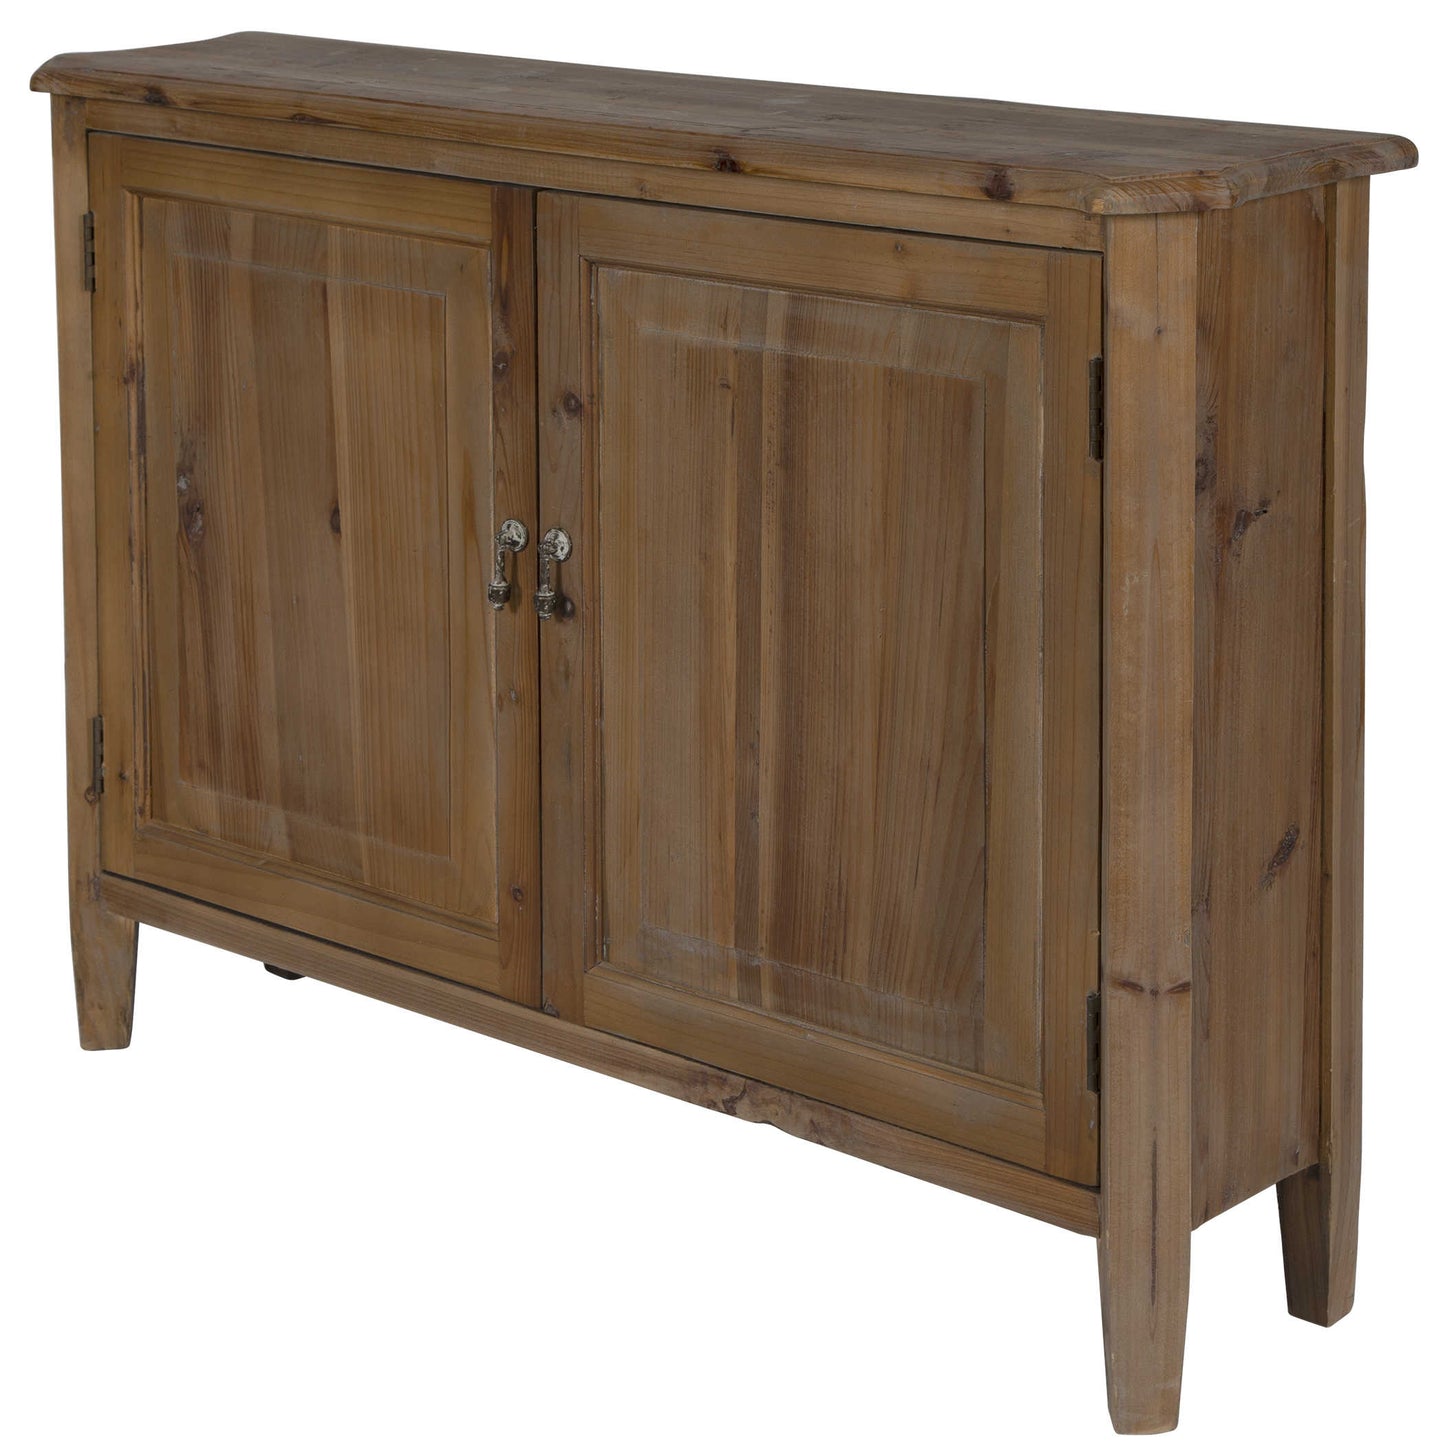 Reclaimed Fir Wood Two Door Cabinet